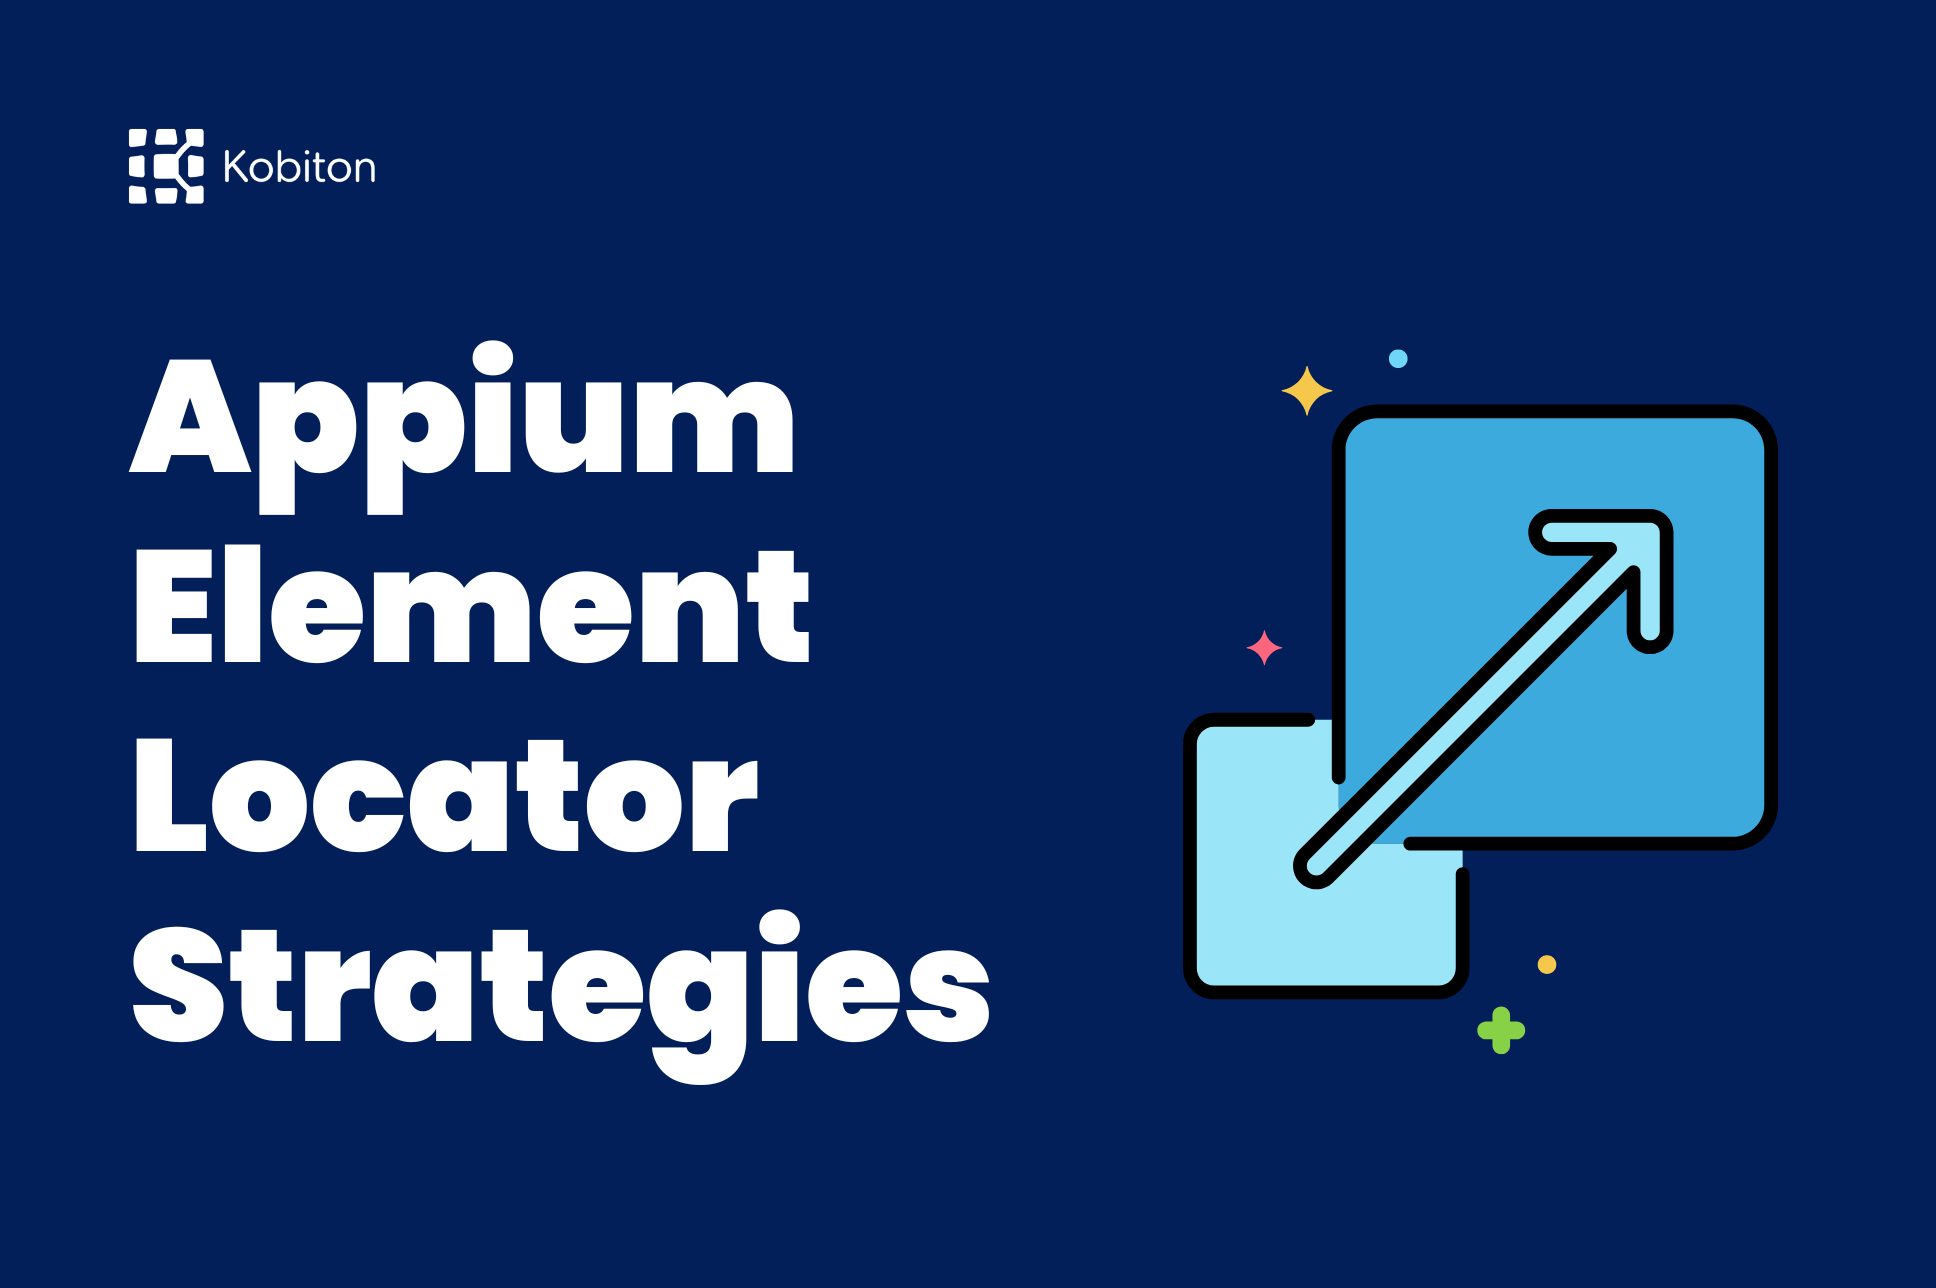 Appium Element Locator Strategies